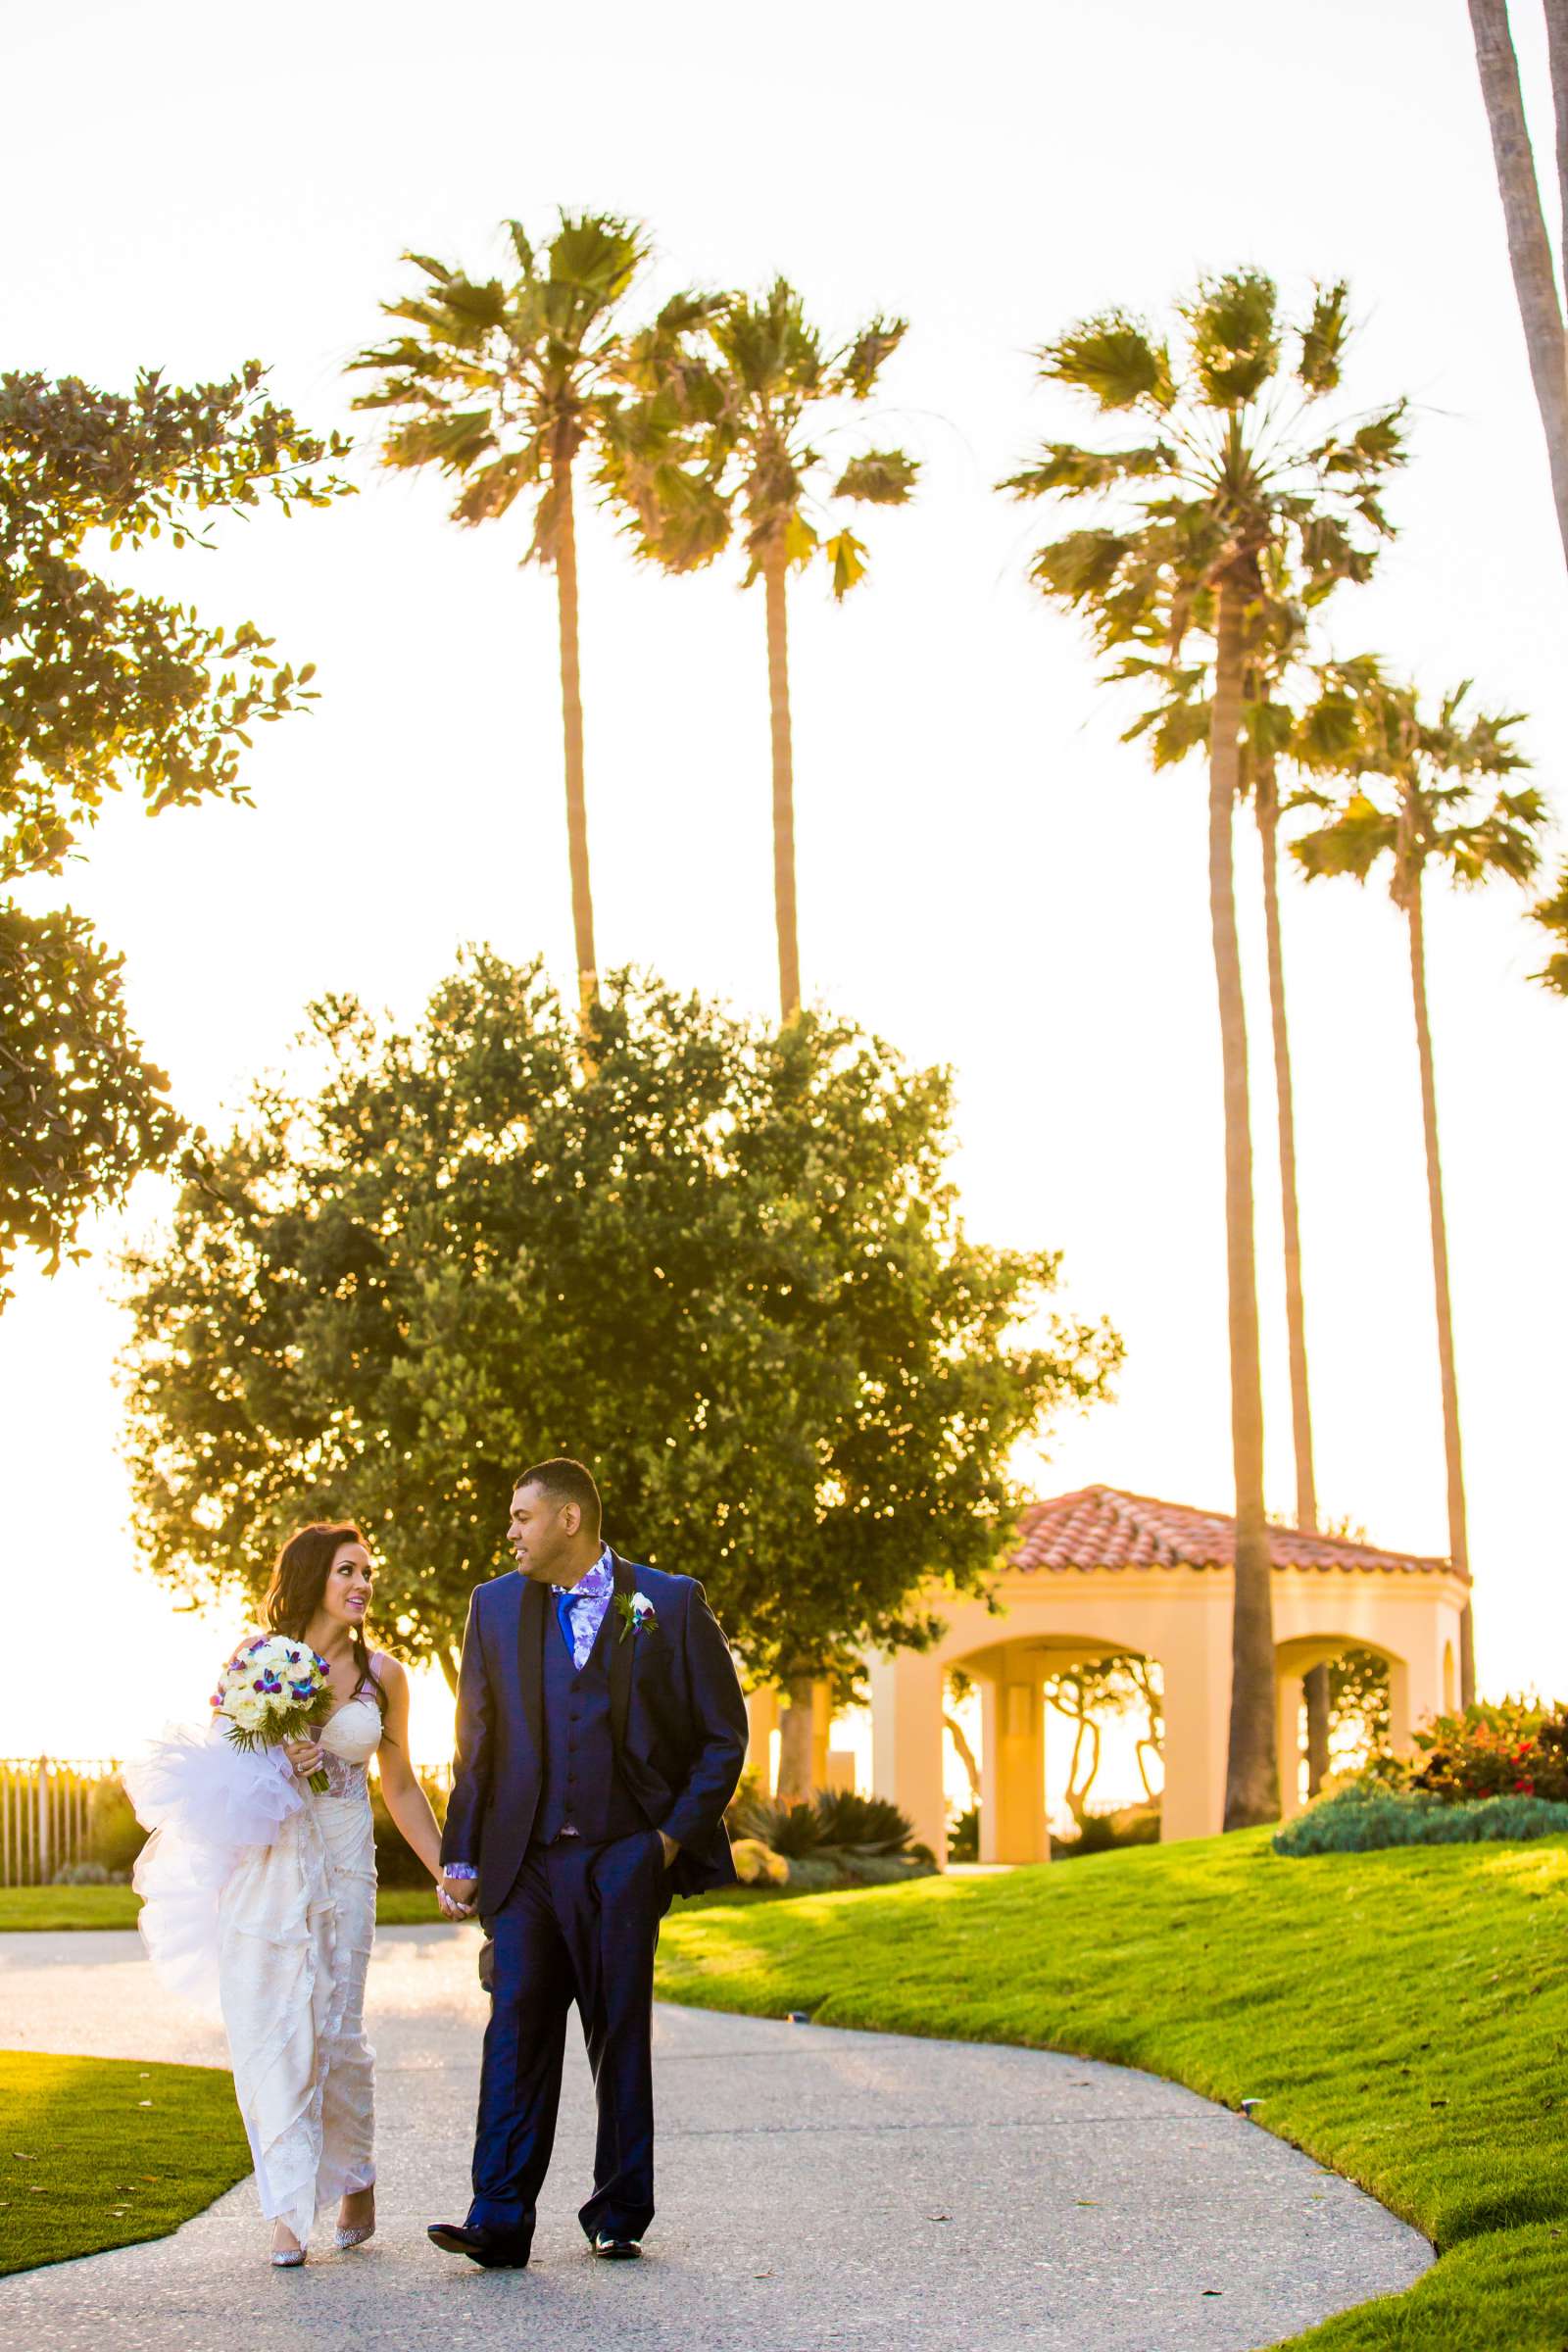 Ritz Carlton-Laguna Niguel Wedding coordinated by Willmus Weddings, Stephanie and Carl Wedding Photo #17 by True Photography